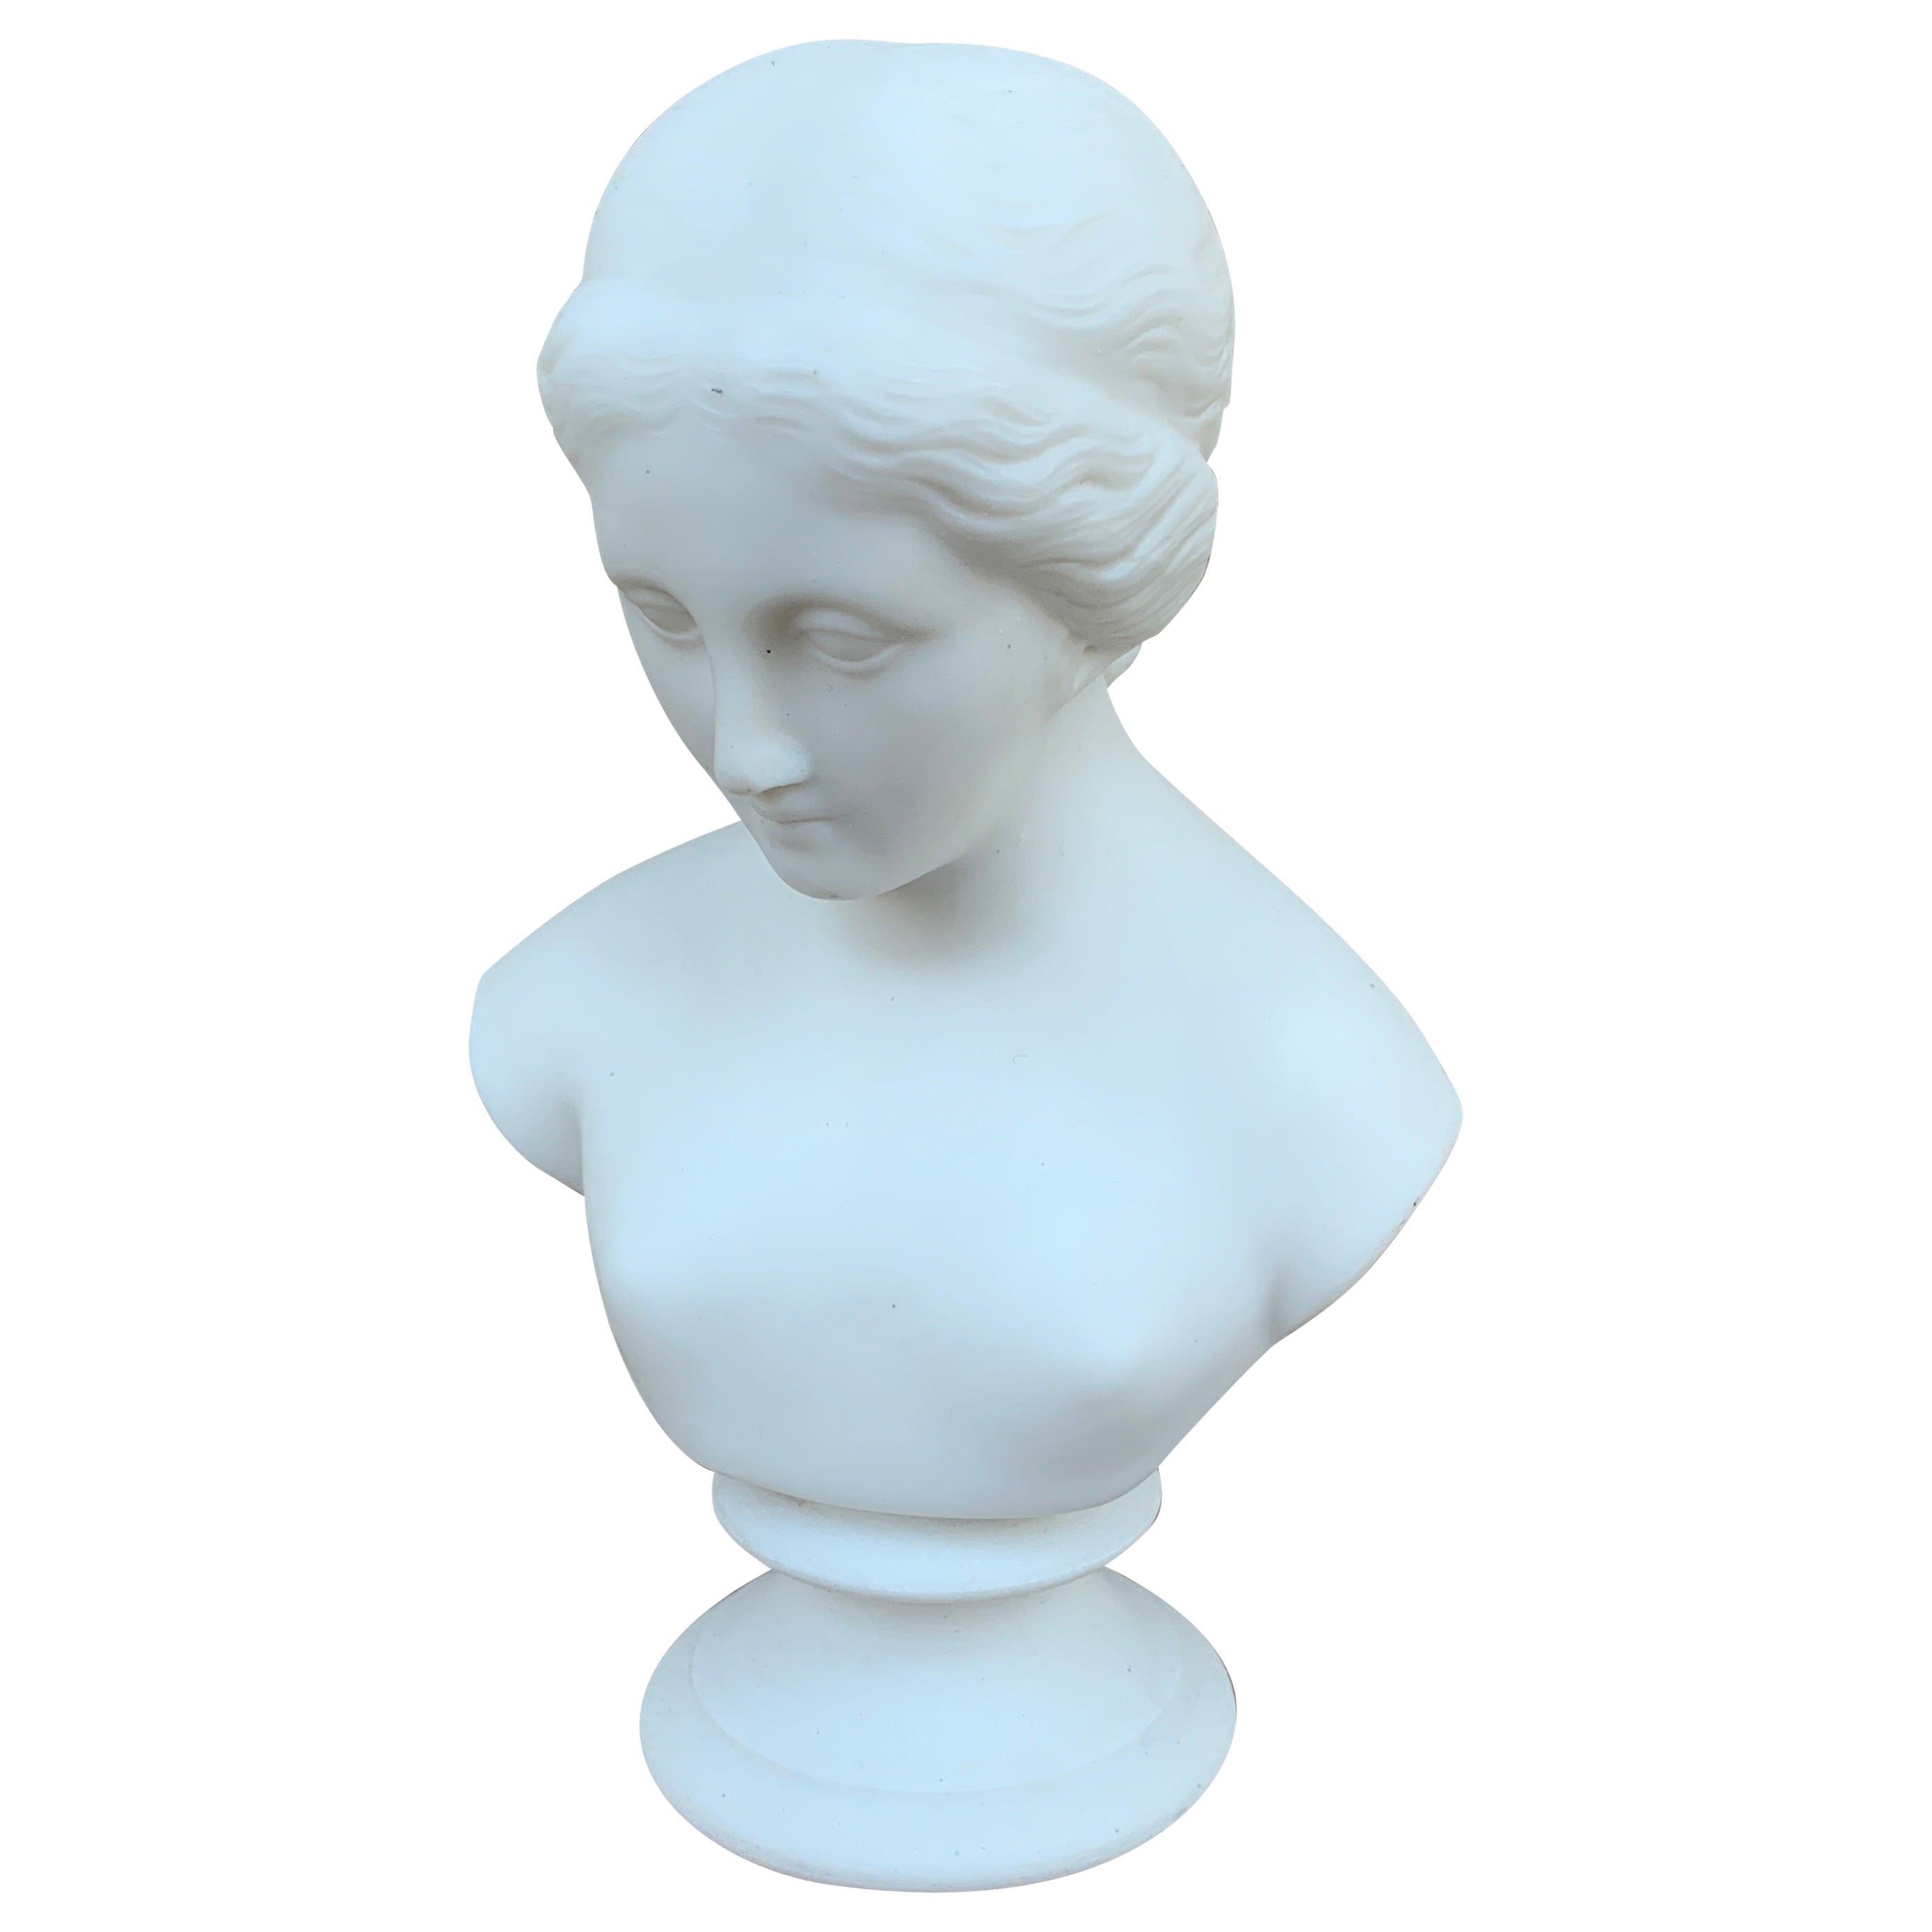 Vintage Classic Female Parian Porcelain Bust Sculpture